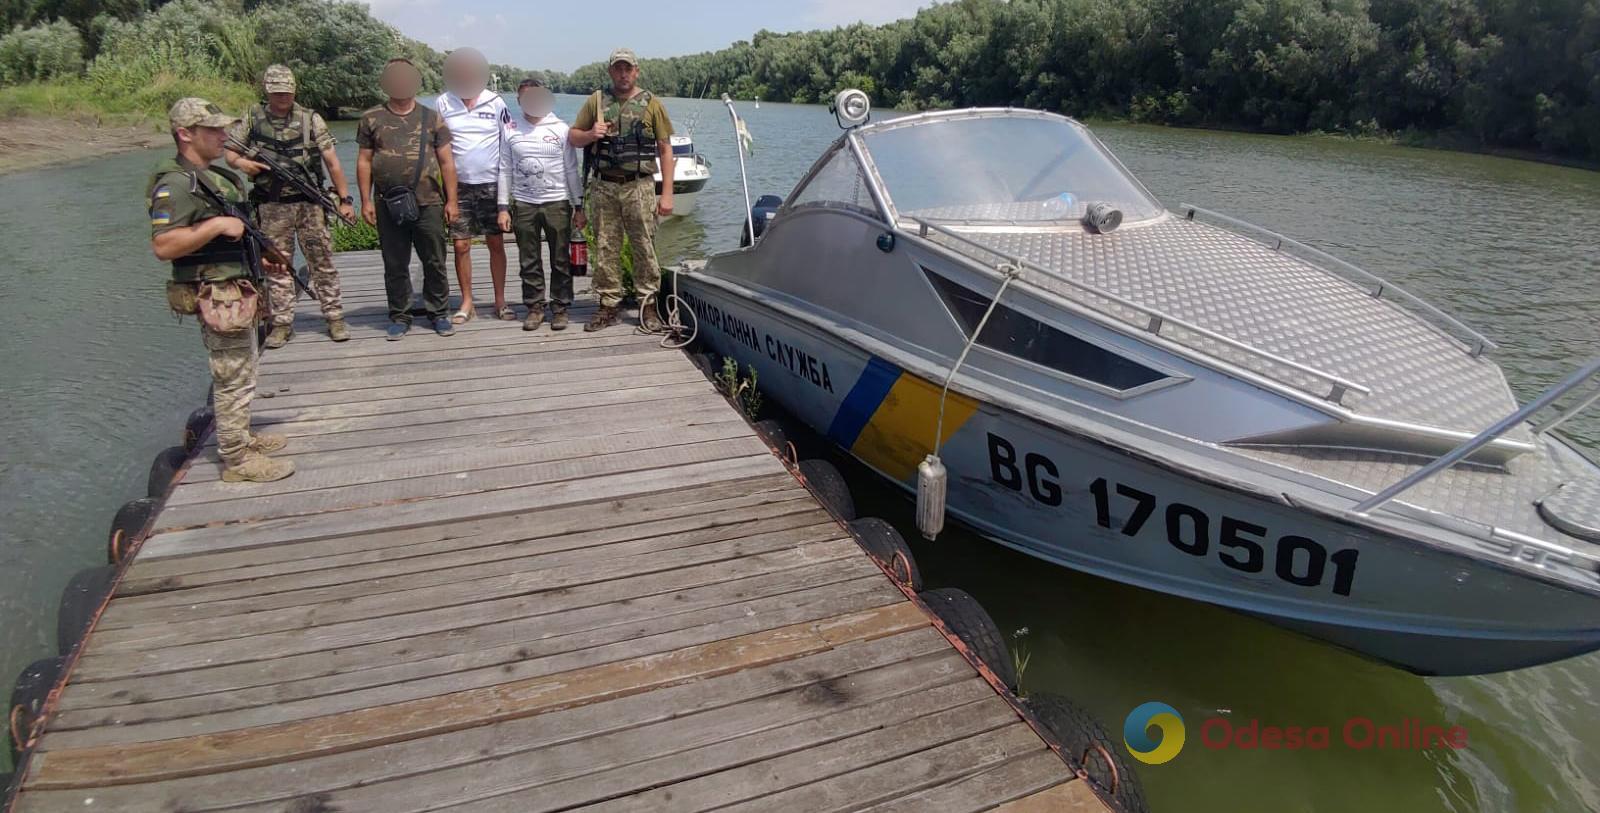 Одесская область: трое румын в лодке пробрались на территорию Украины